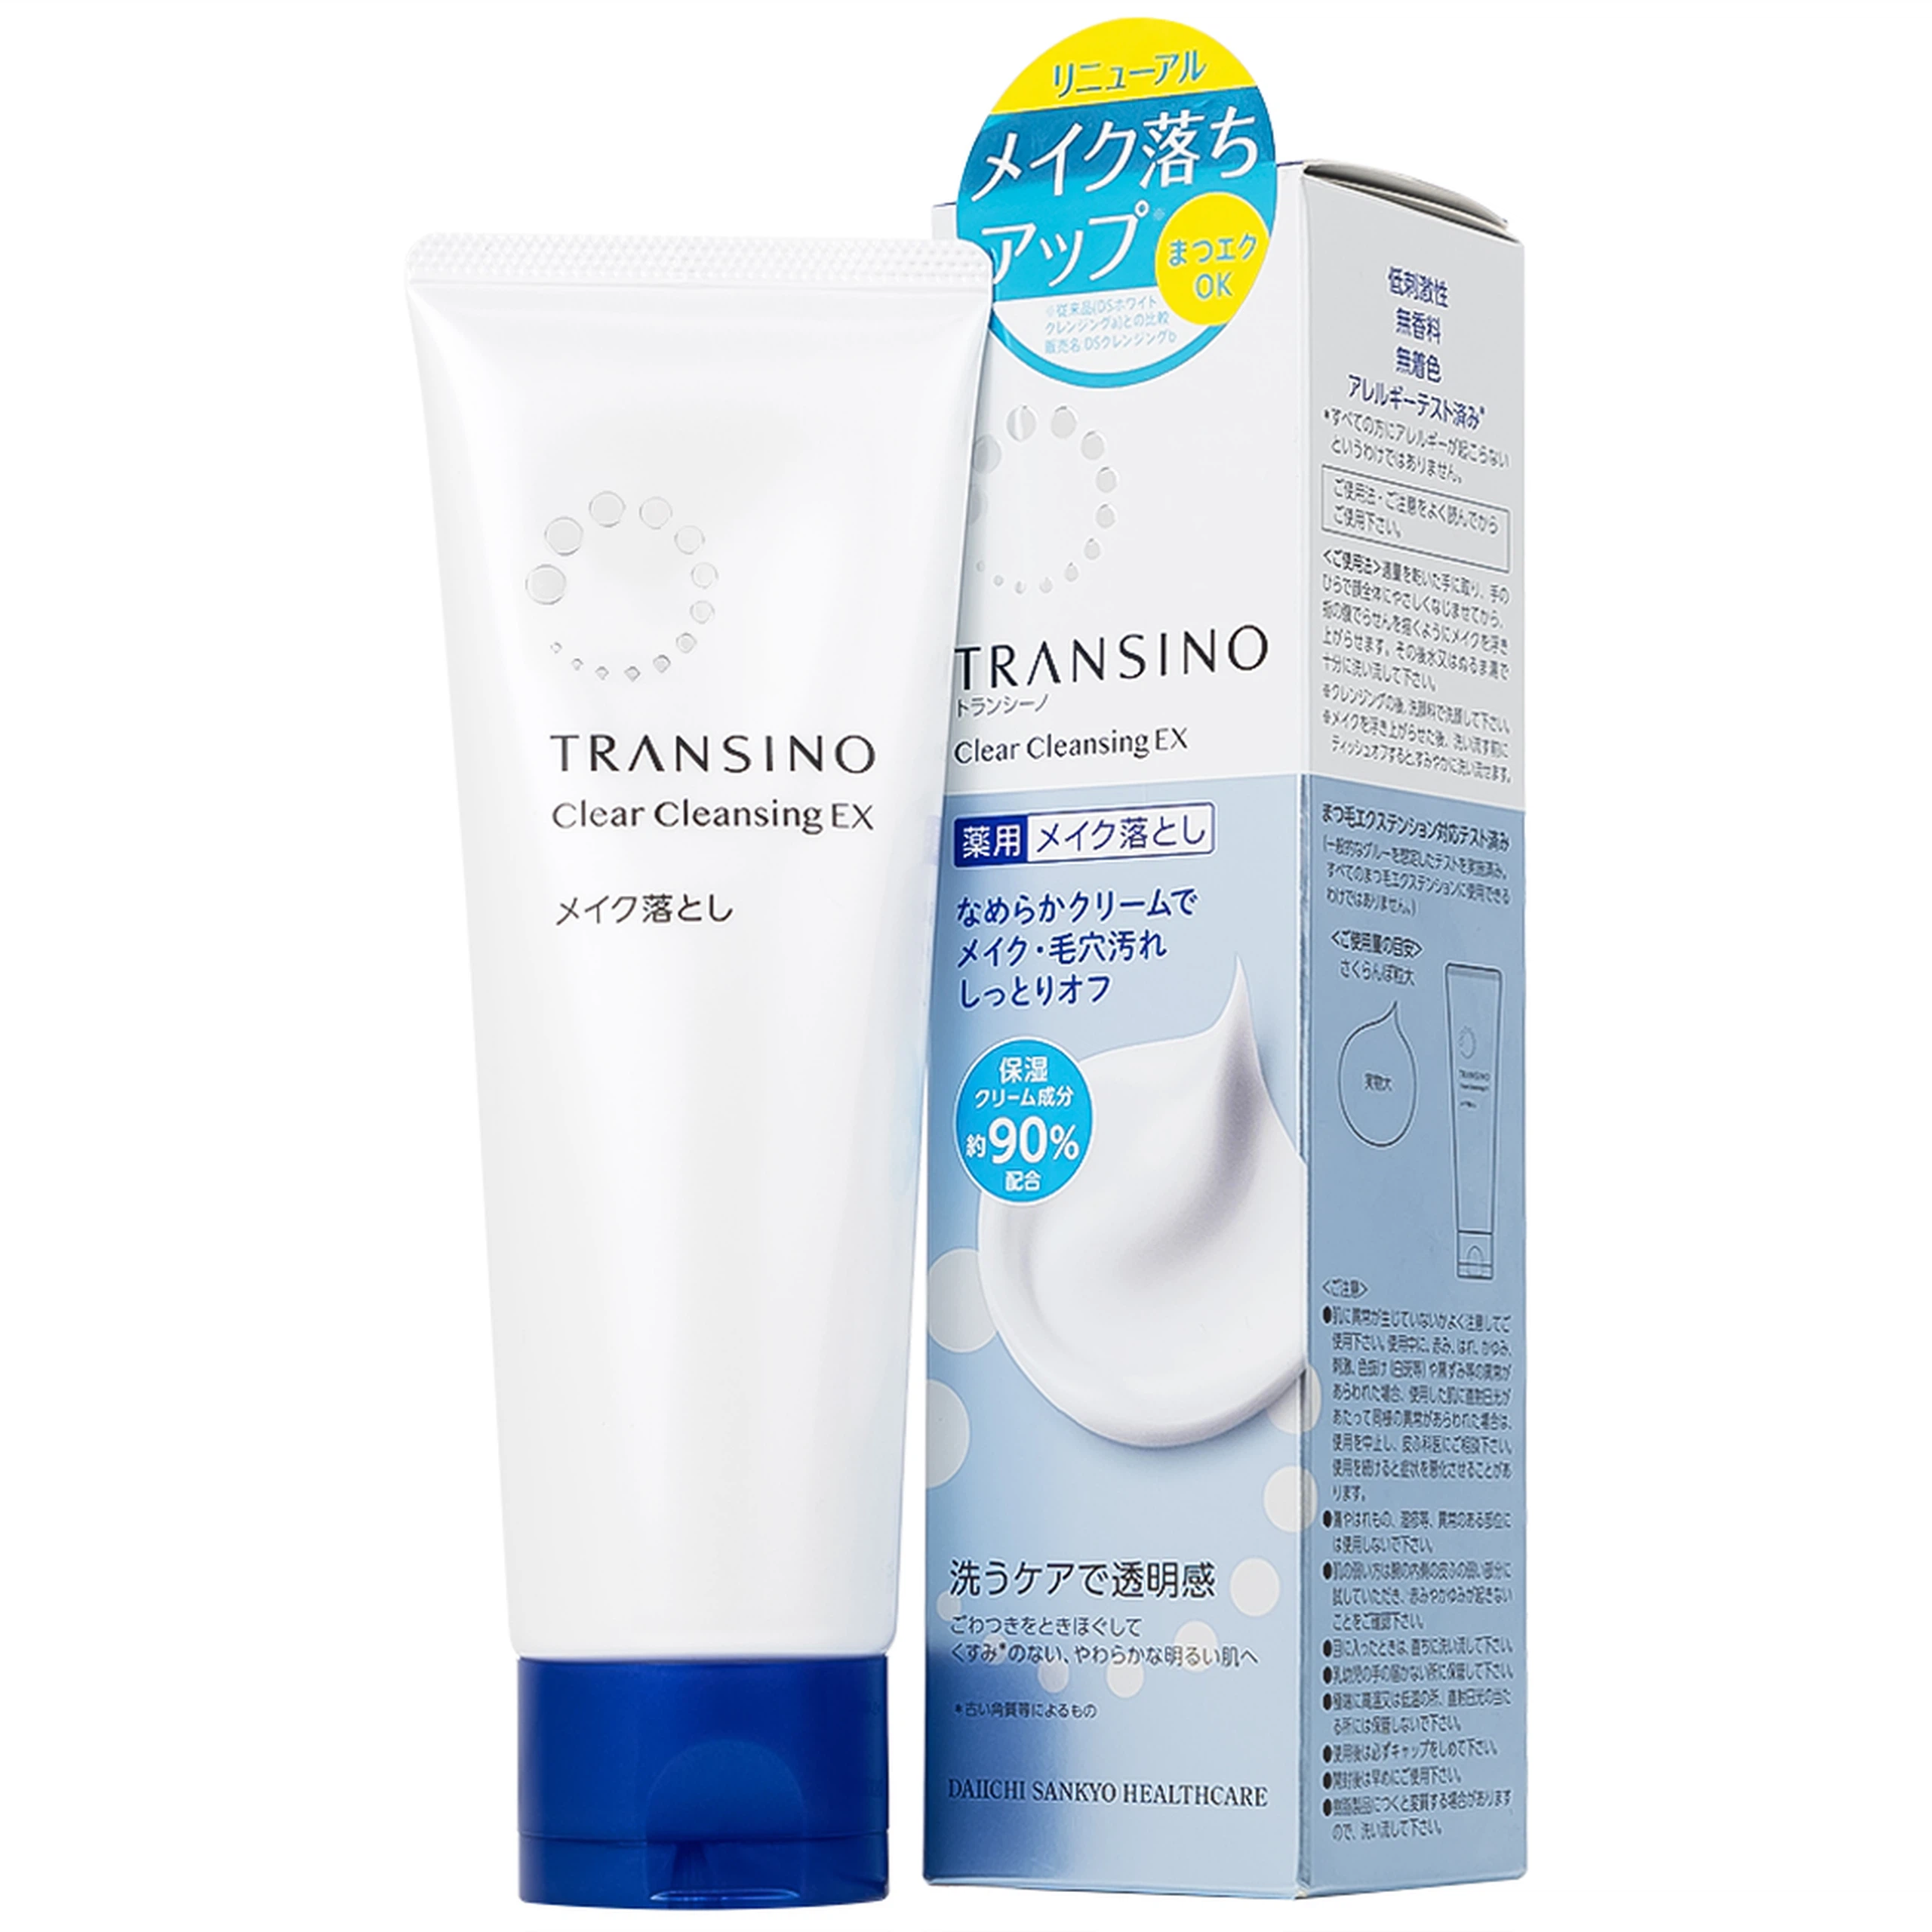 Kem tẩy trang Transino Clear Cleansing Ex giúp loại bỏ lớp trang điểm, bụi bẩn lỗ chân lông và dầu thừa (110g)